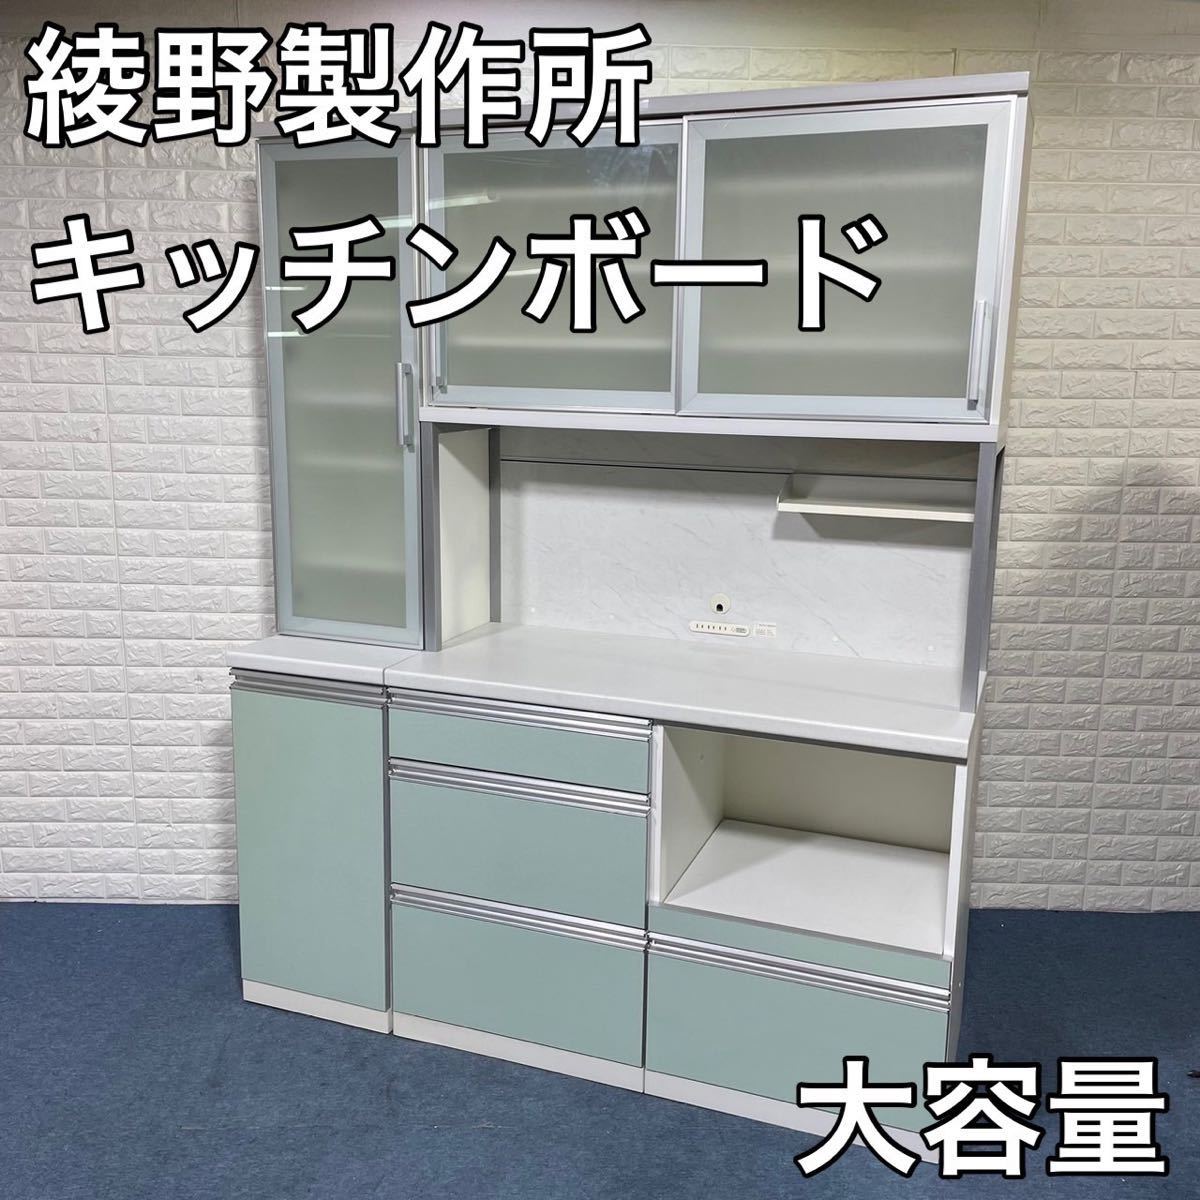 AC AYANO 綾野製作所 キッチンボード 家電ボード 食器棚 キッチン収納 A707